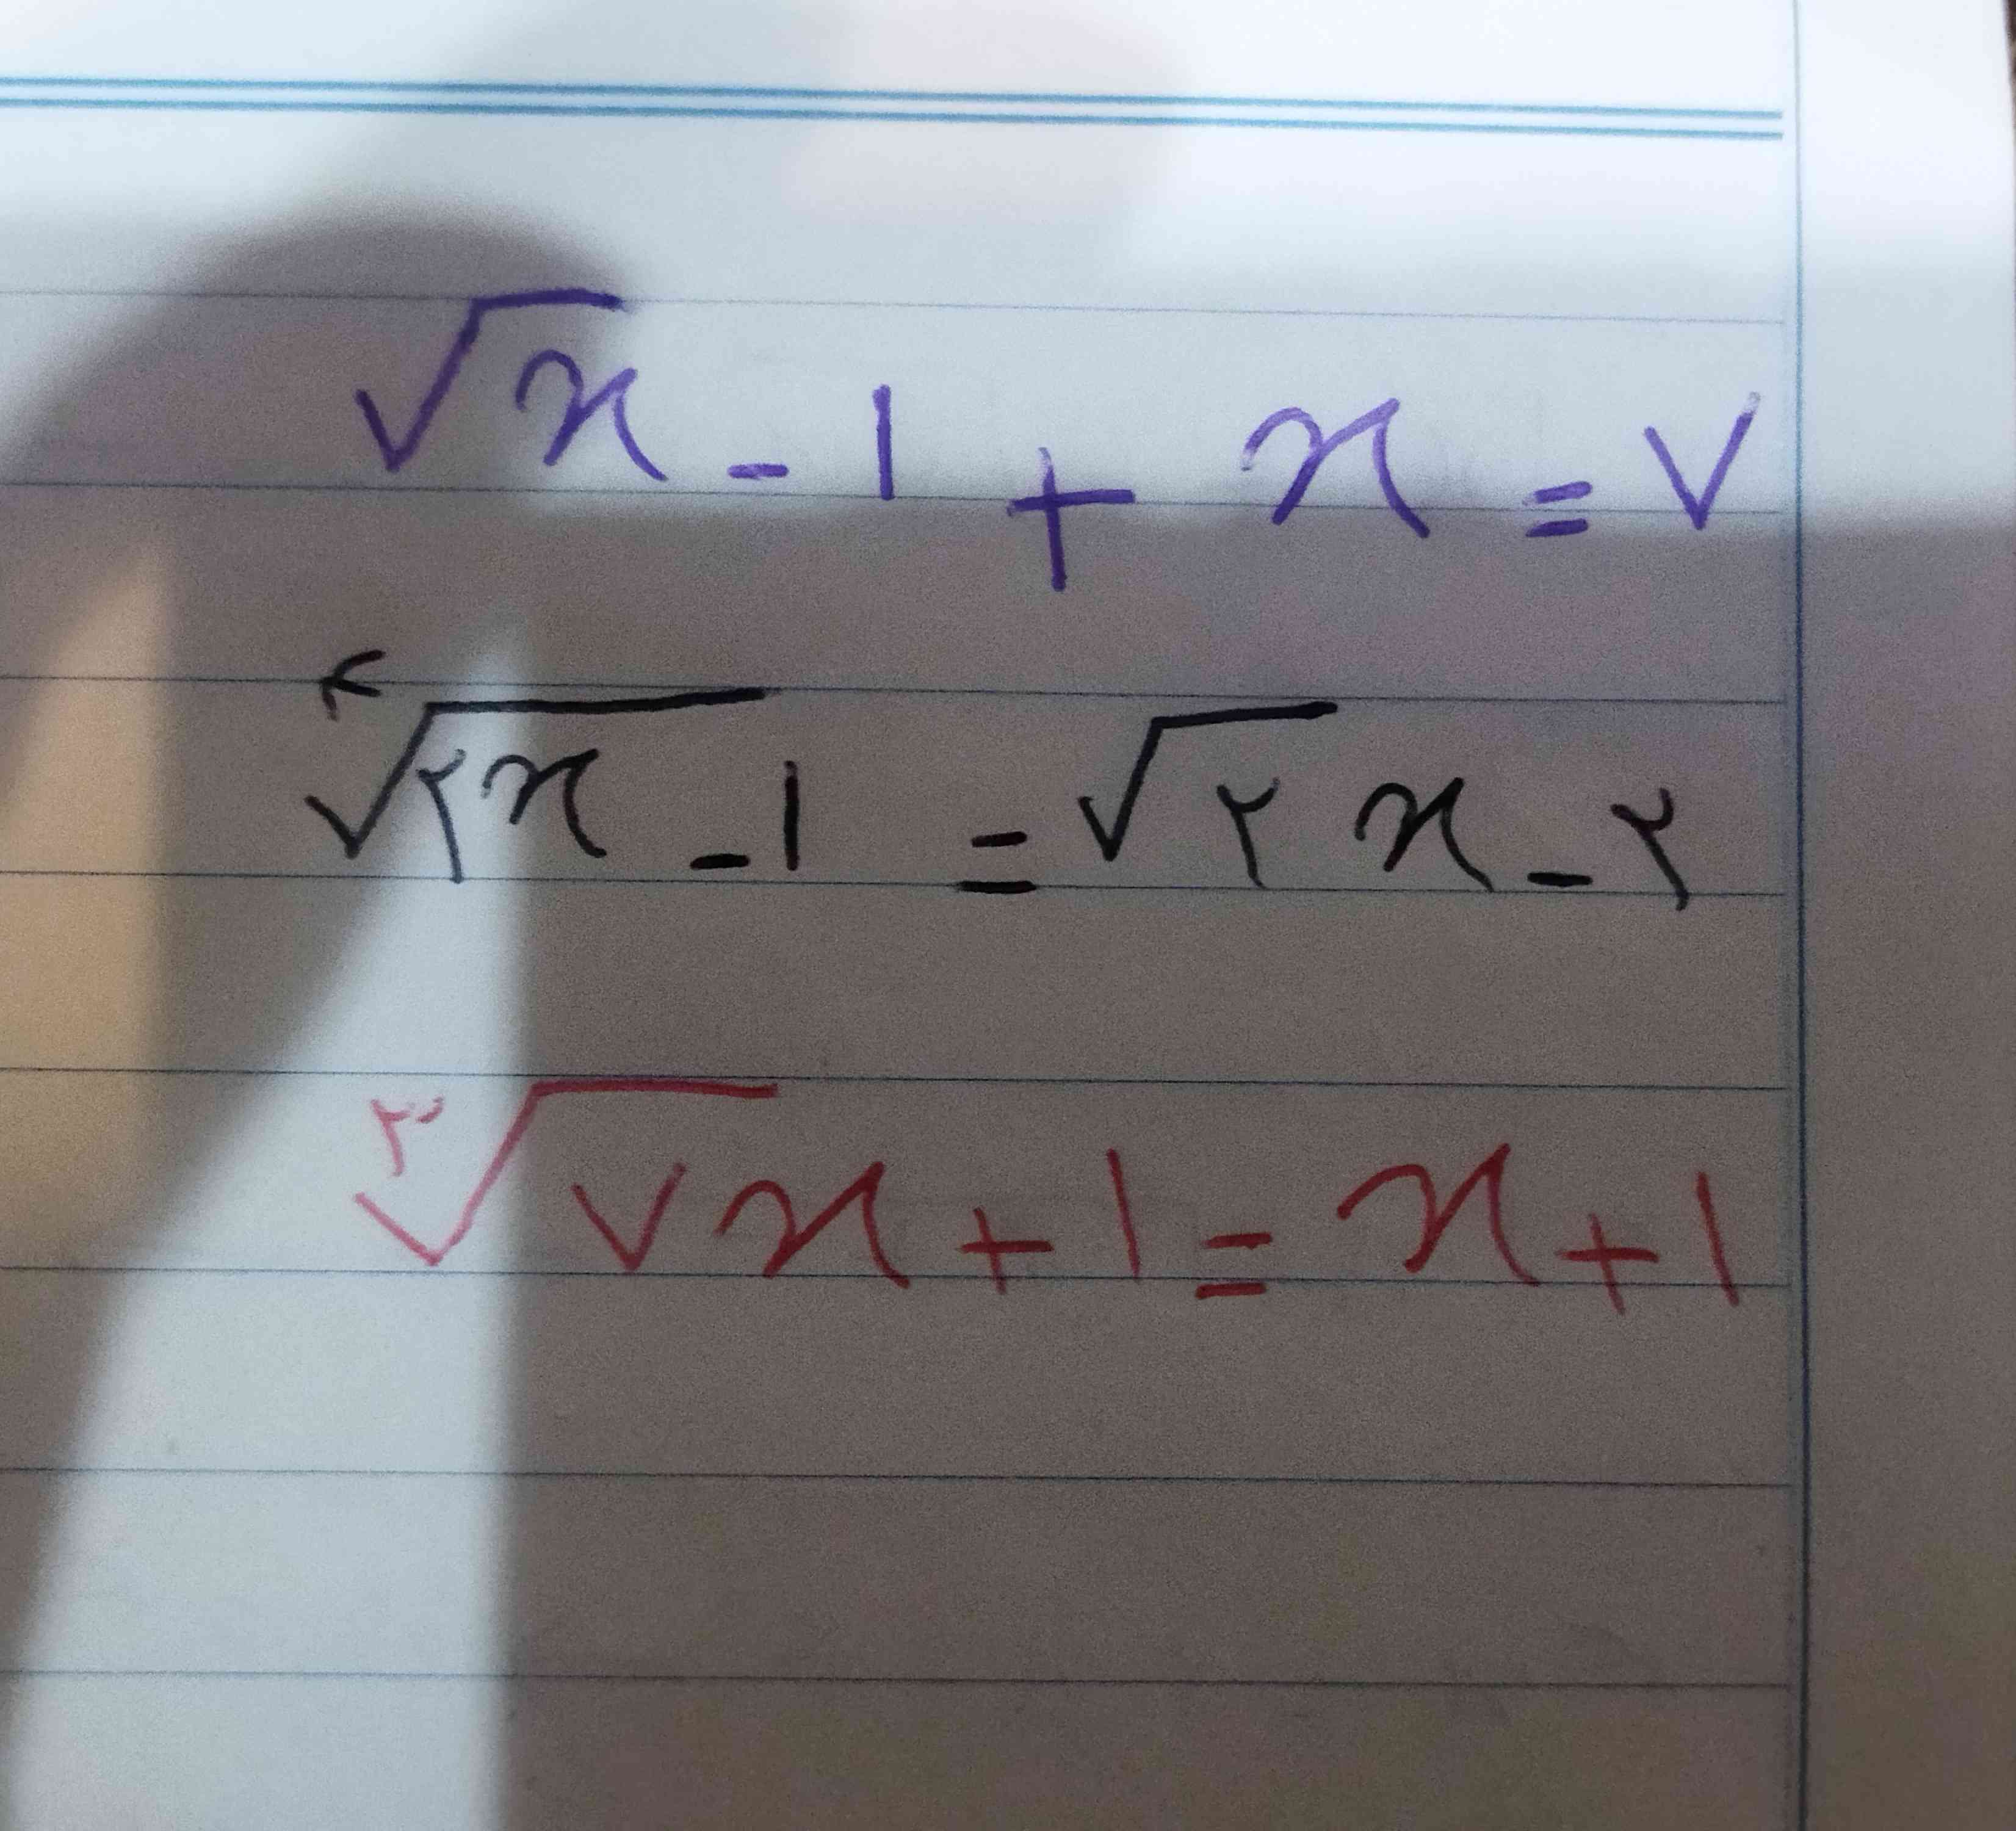 میشه این سه تا معادله ی گنگ رو حل کنید لطفاً 🙏